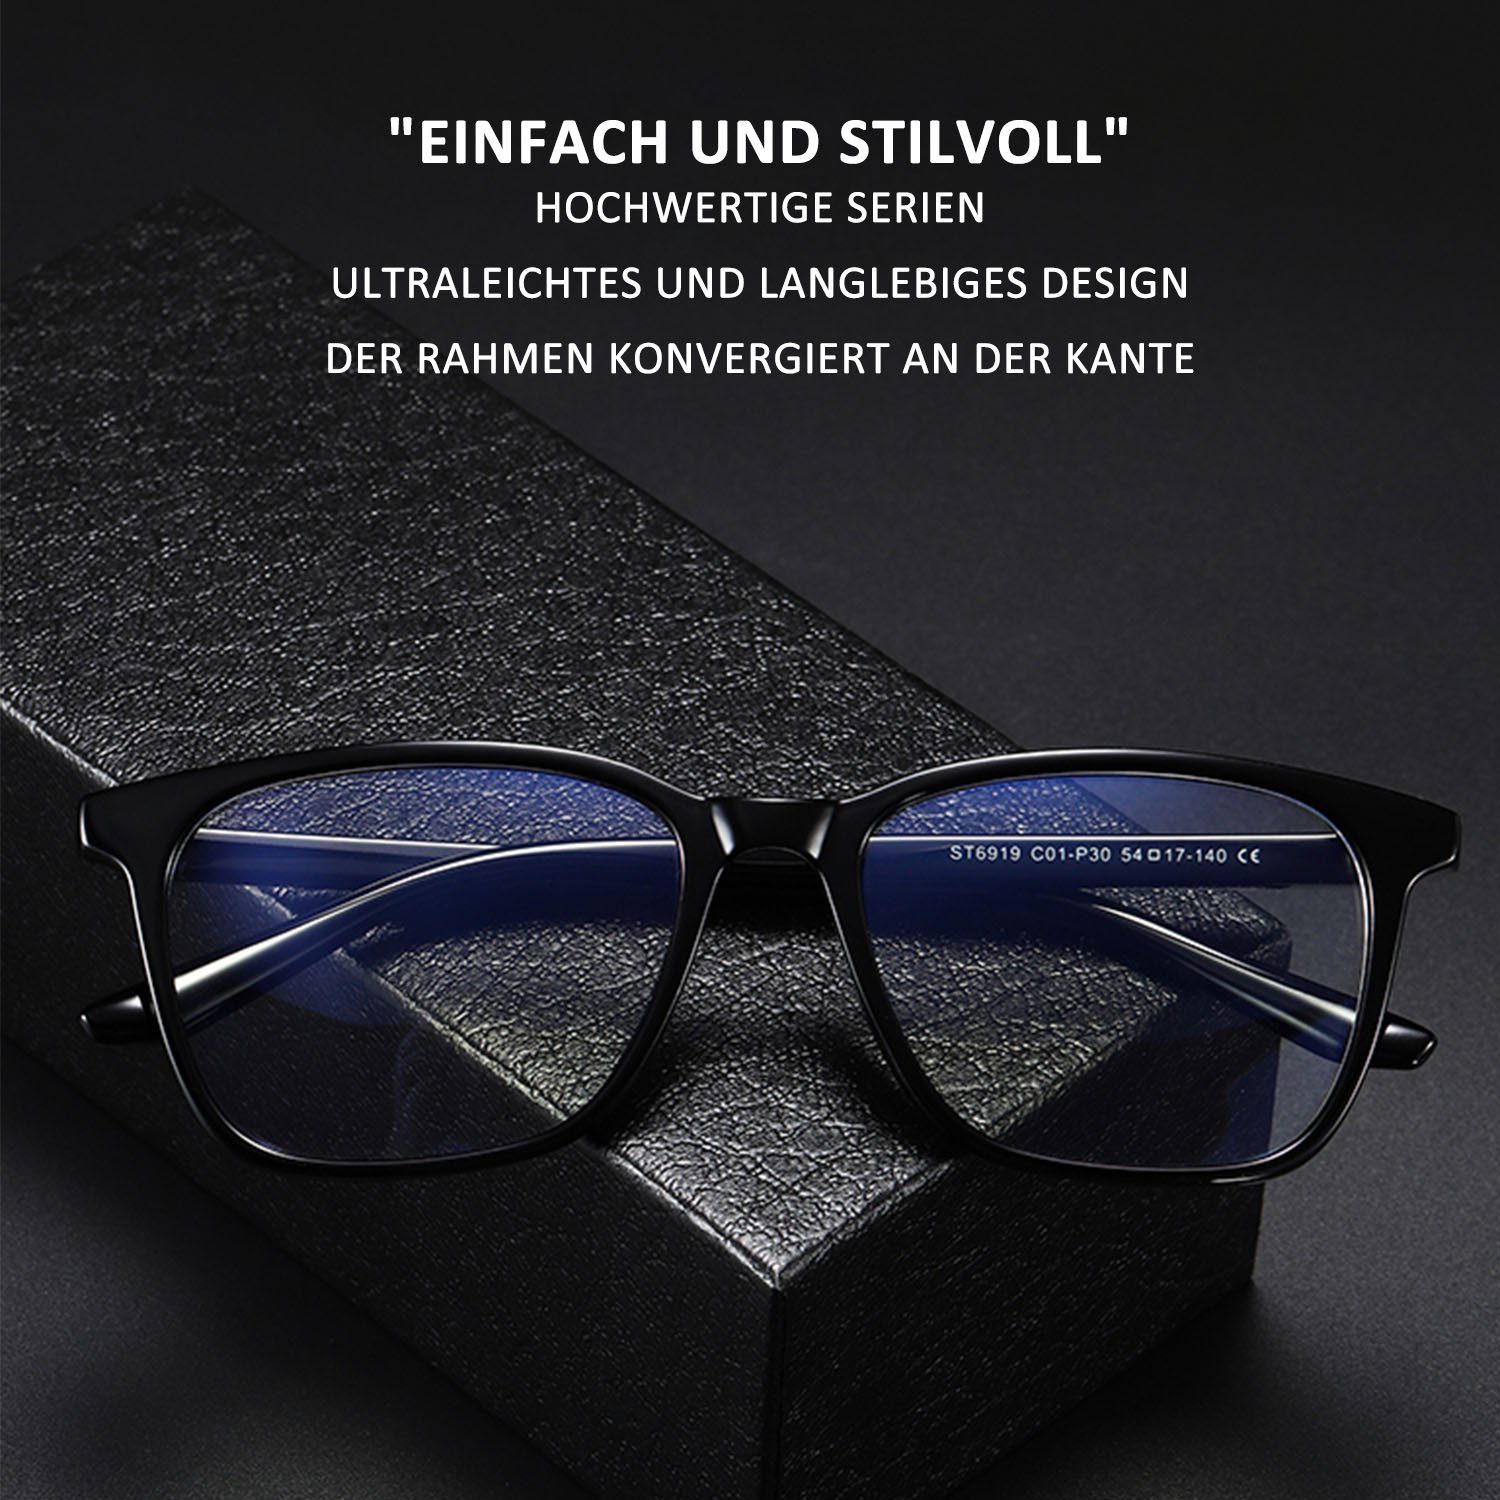 BlendschutzBlaulicht-Schutzbrillen ohne Sehstärke Blendschutz Schwarz MAGICSHE Retro Lesebrille